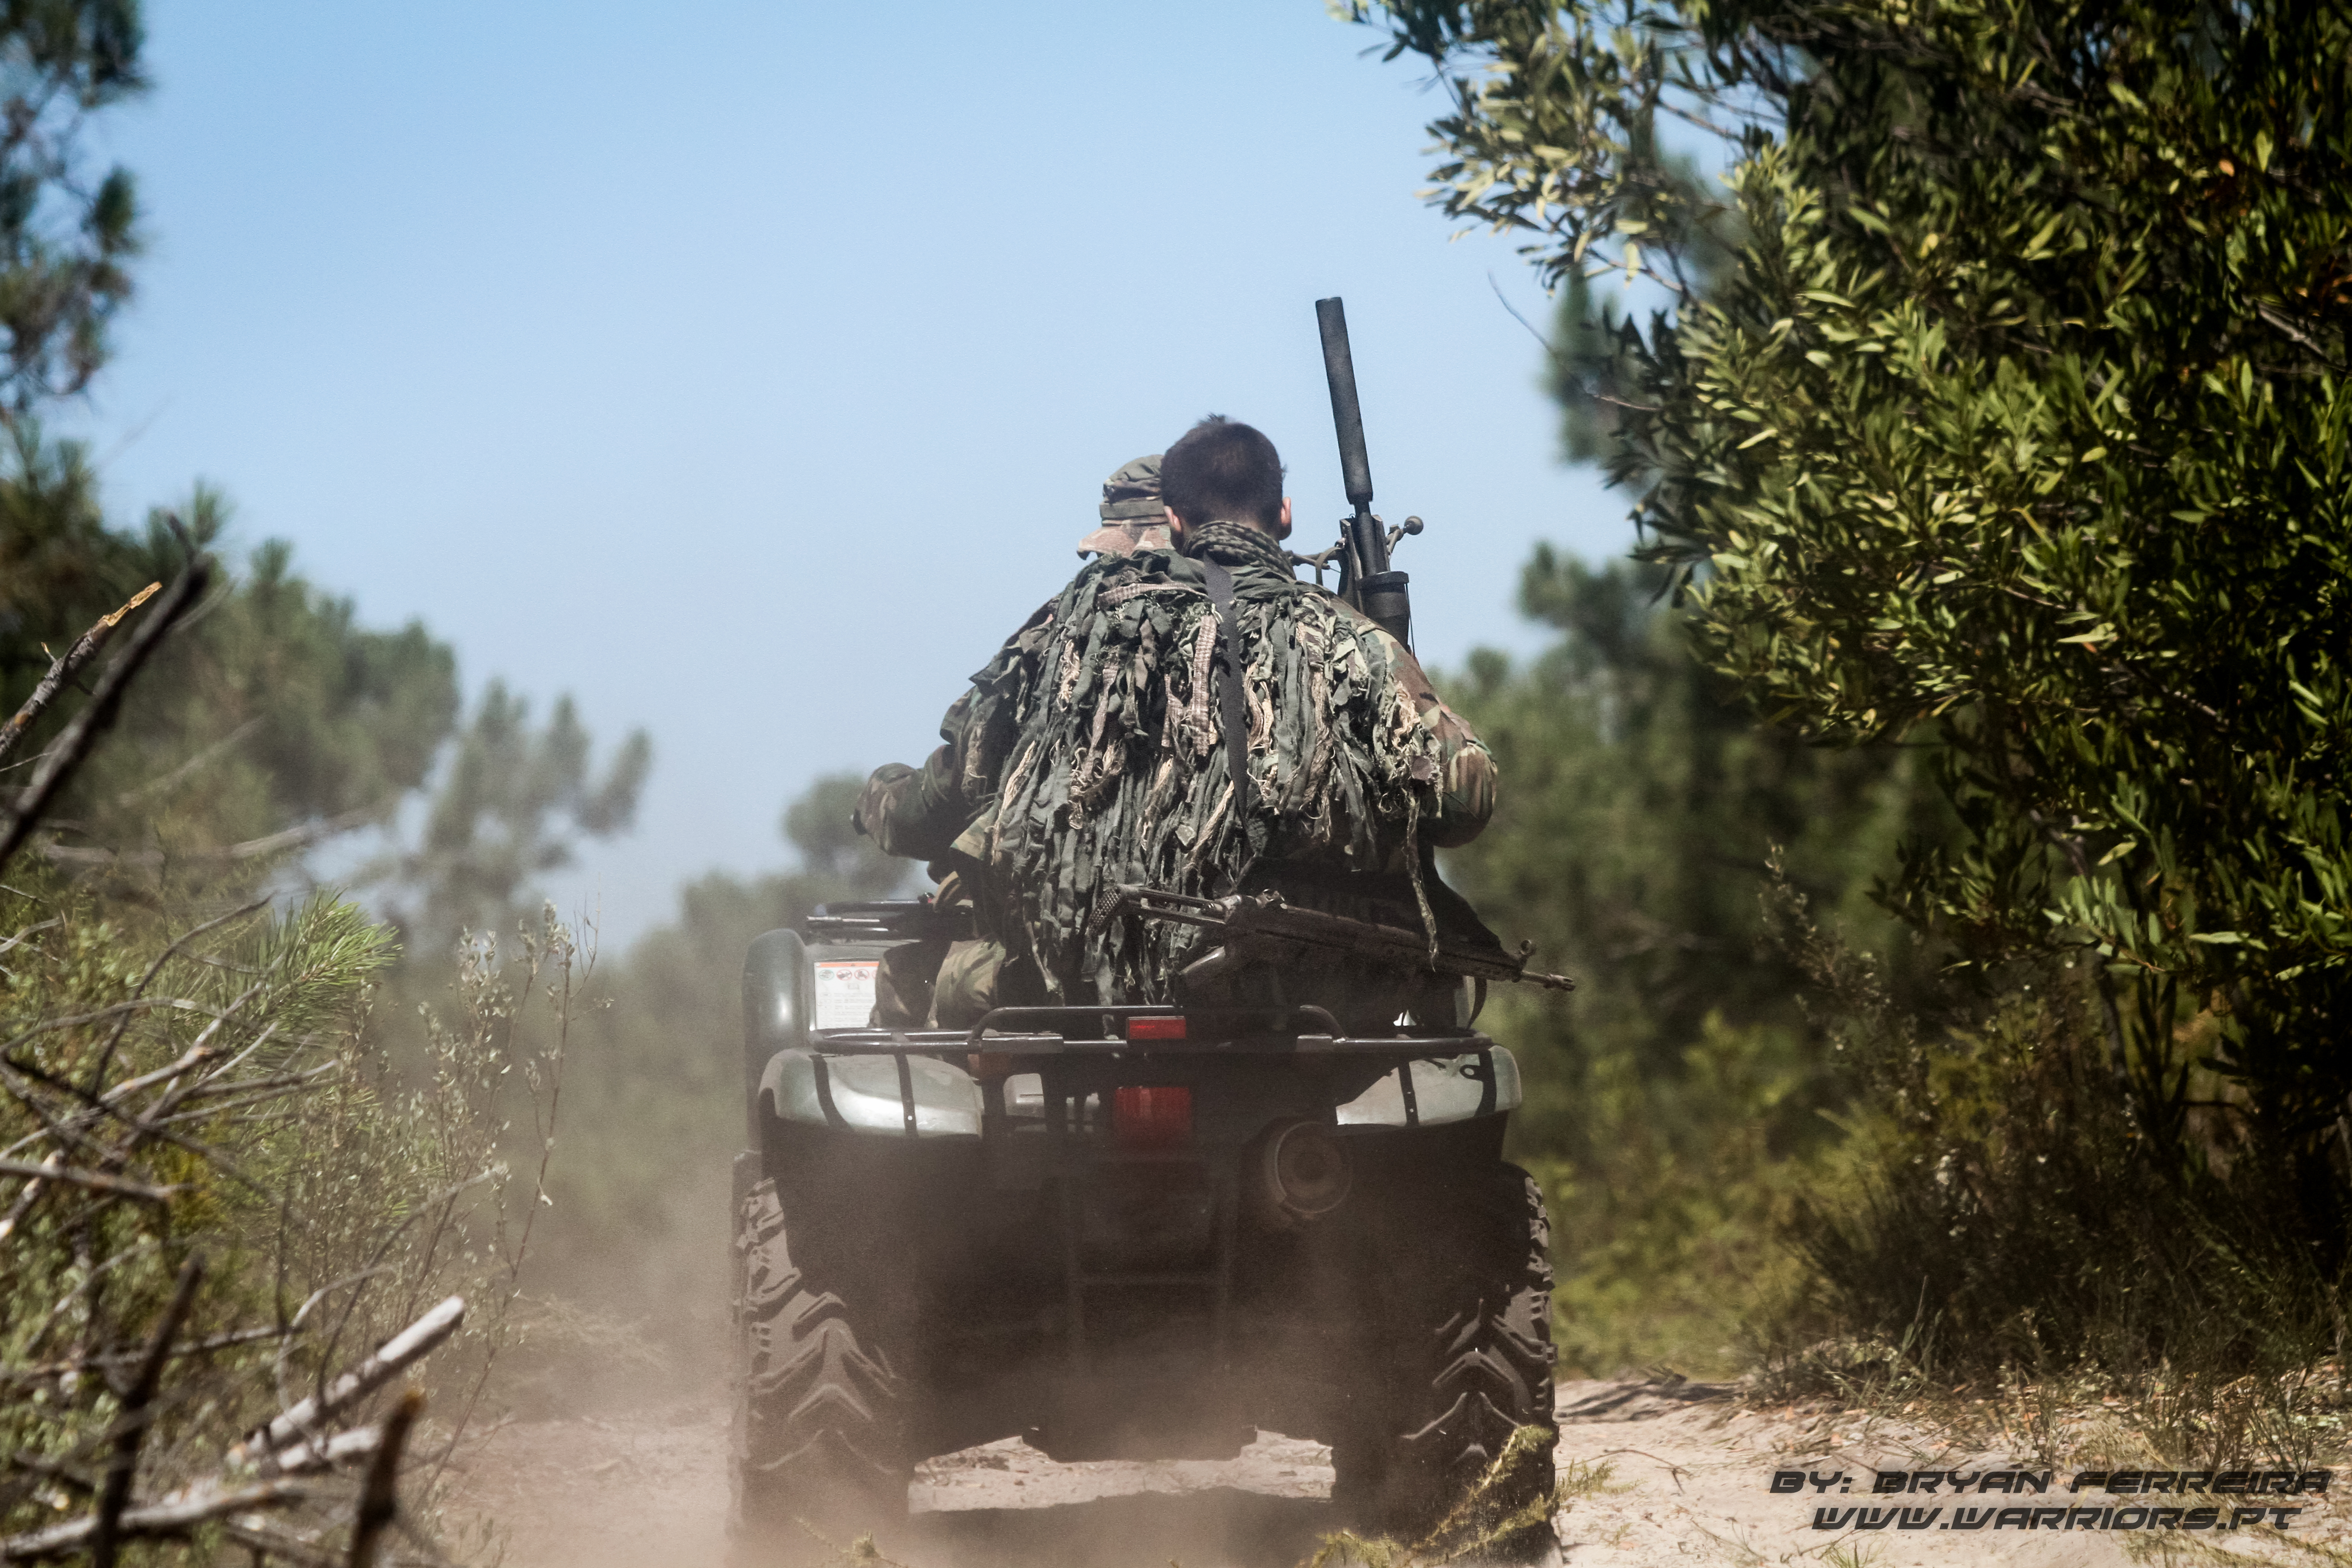 Snipers do pelotão reconhecimento usam uma moto 4 (ATV - All Terrain Vehicle) para se deslocarem